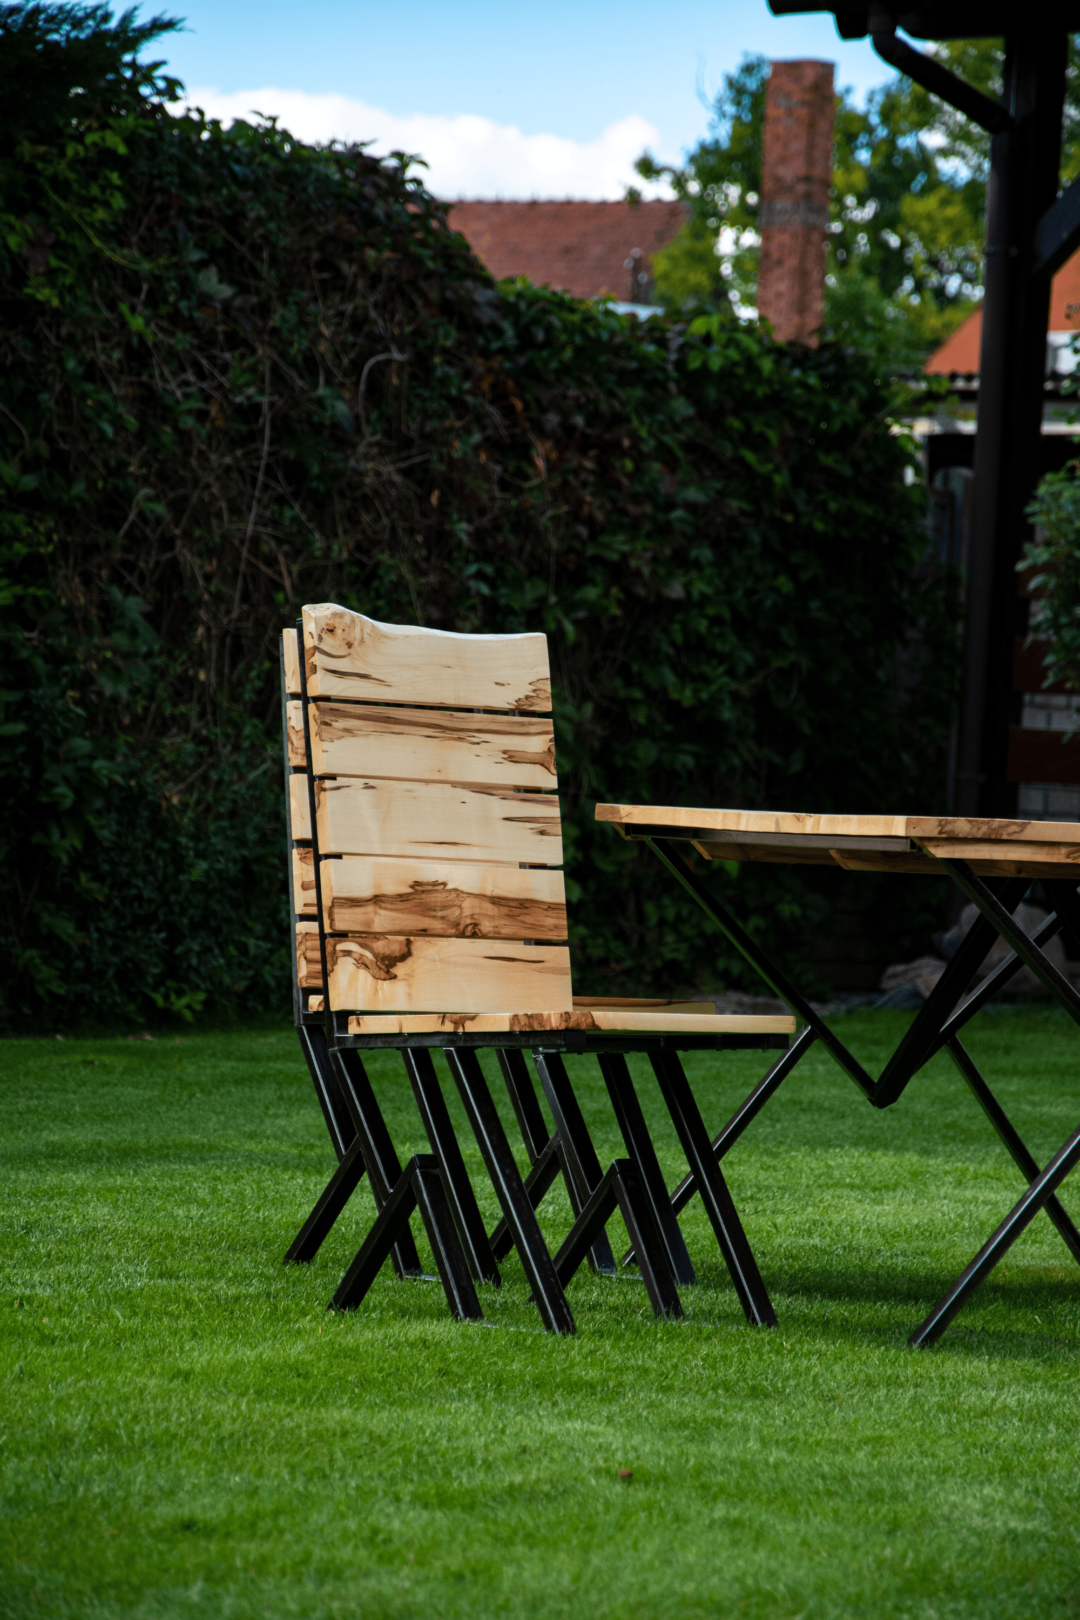 Krzesło ogrodowe Family z litego drewna klonowego i surowej stali, część zestawu mebli ogrodowych do ogrodu,domu,restauracji,jadalni,hotelu